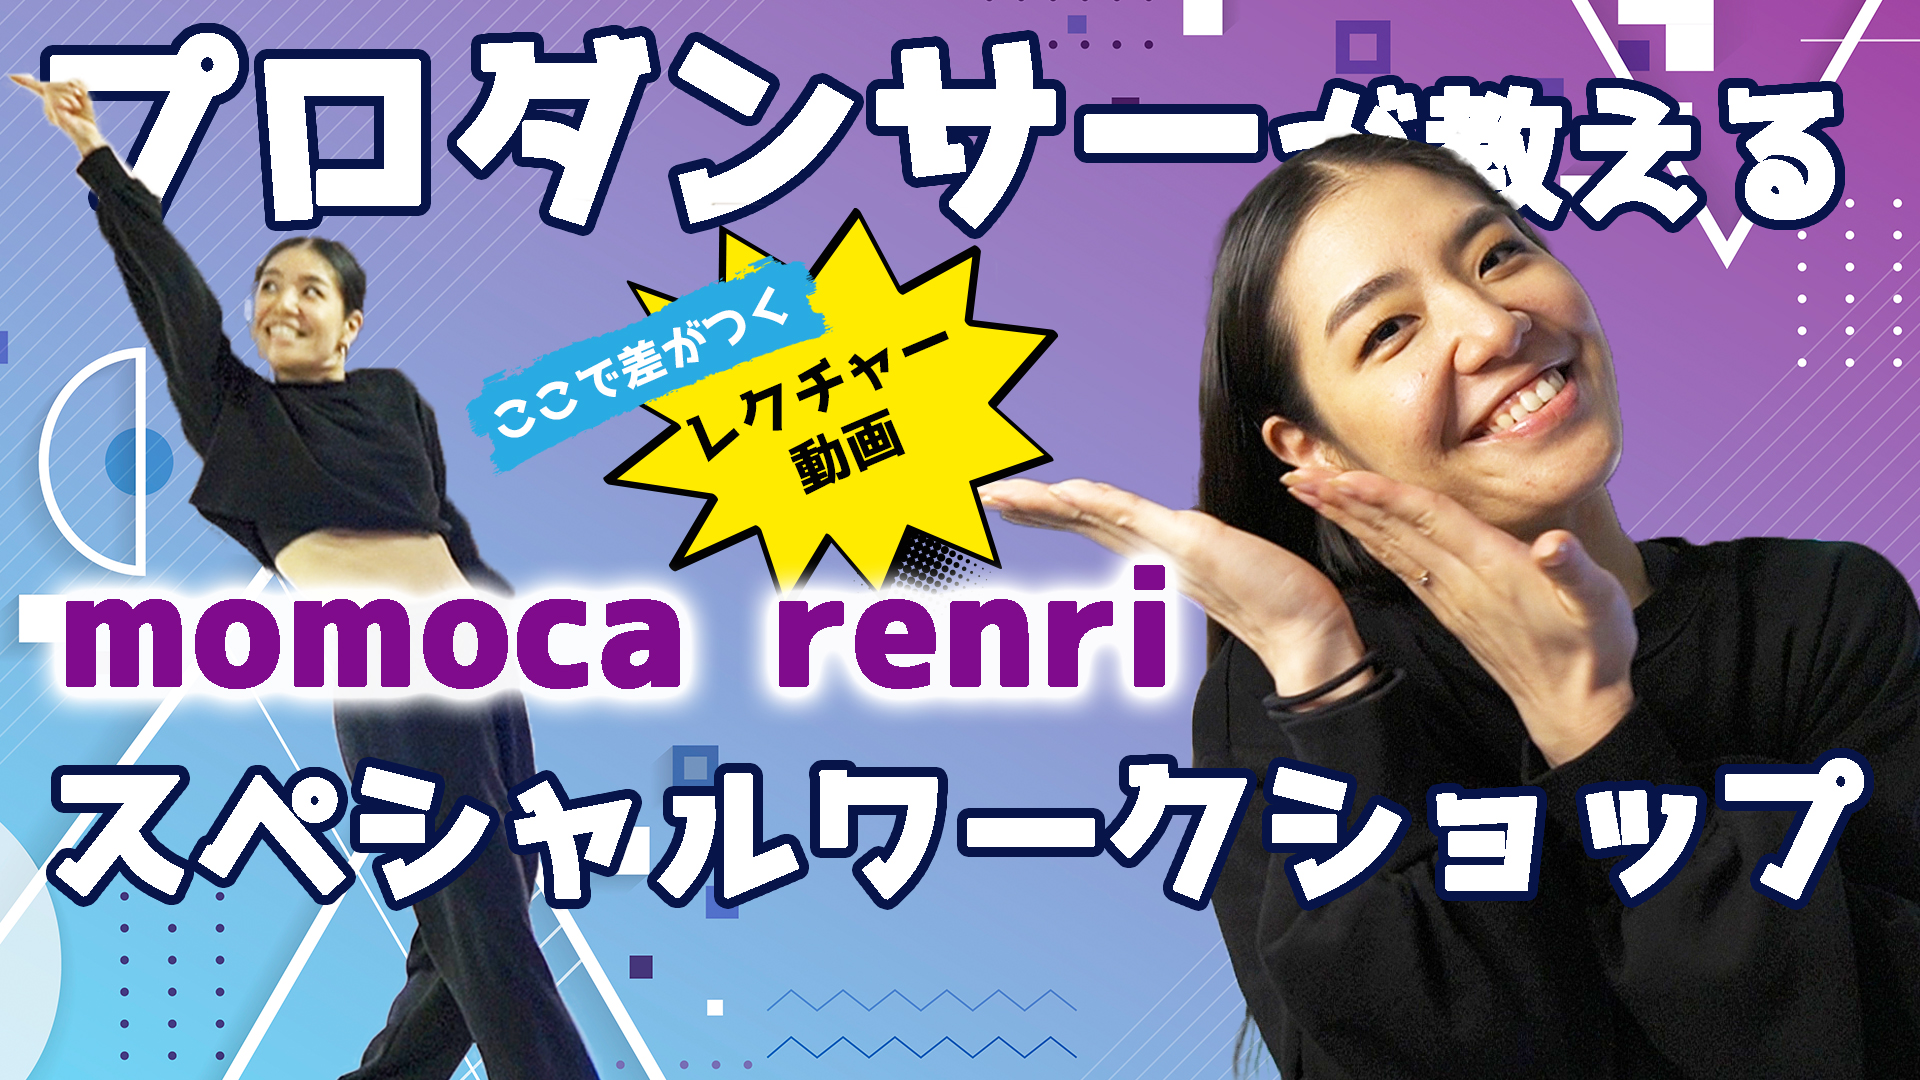 【ヒップホップ】momoca renri スペシャルワークショップ！ダンサー必見のコレオ動画！